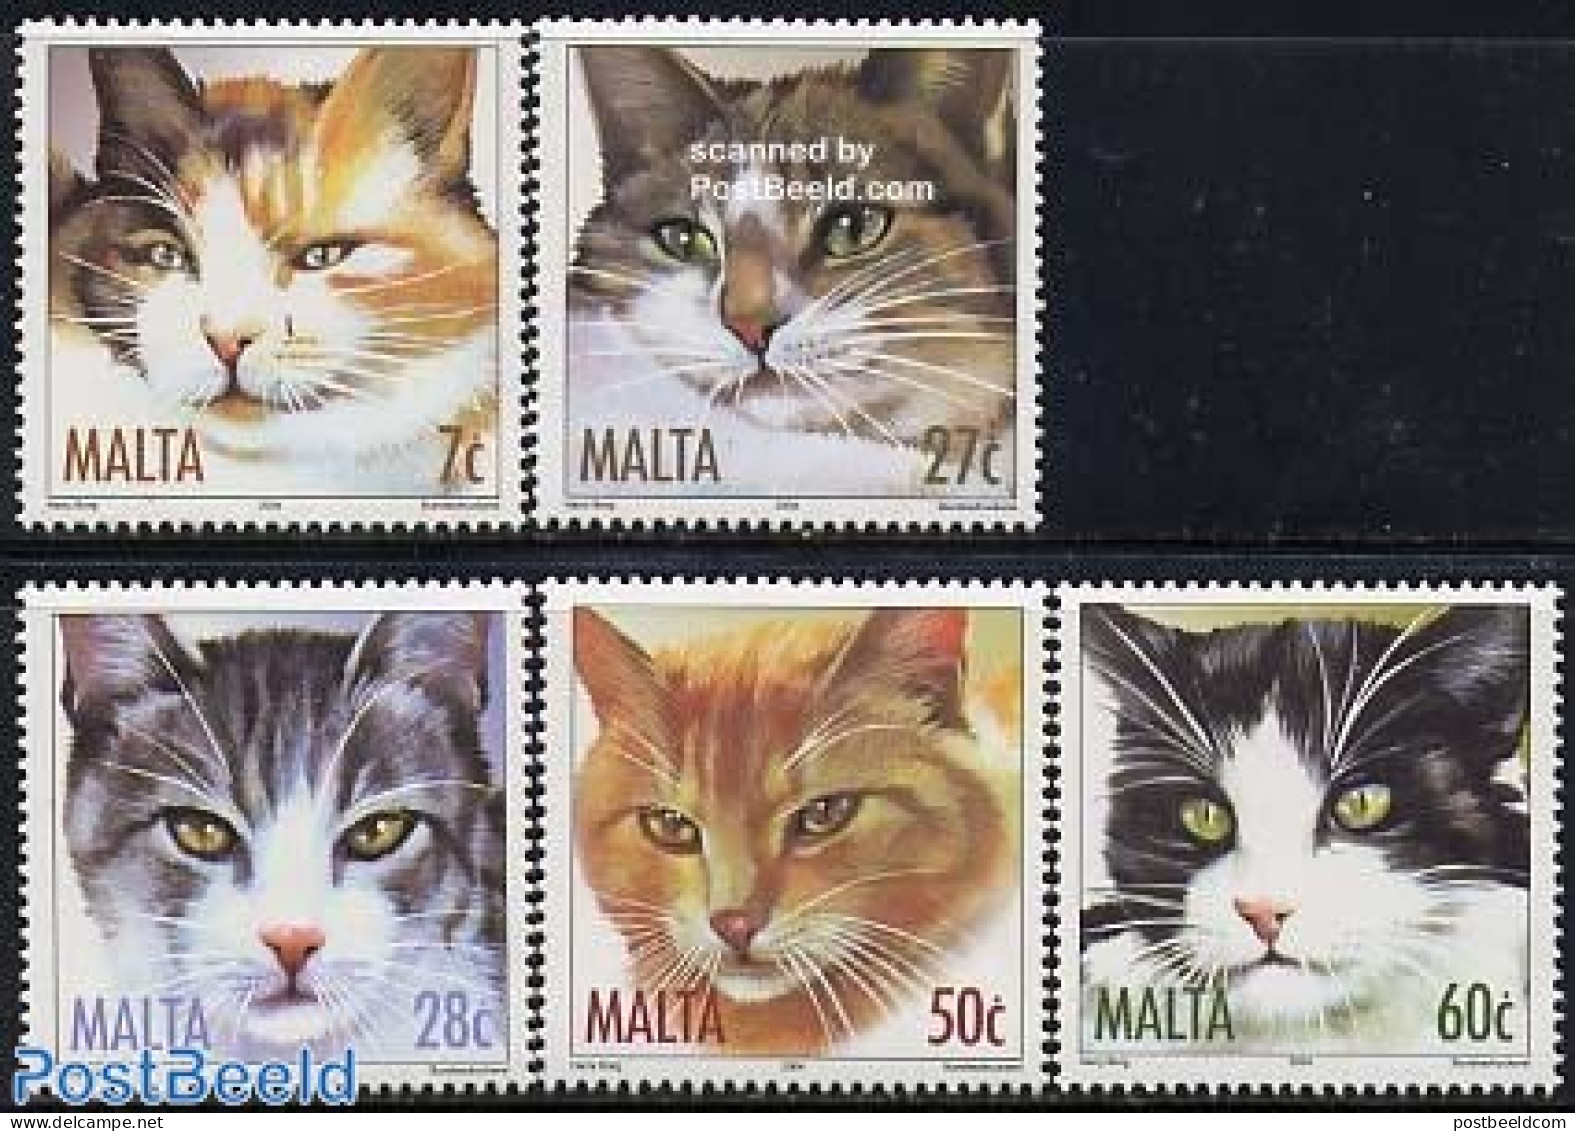 Malta 2004 Cats 5v, Mint NH, Nature - Cats - Malta